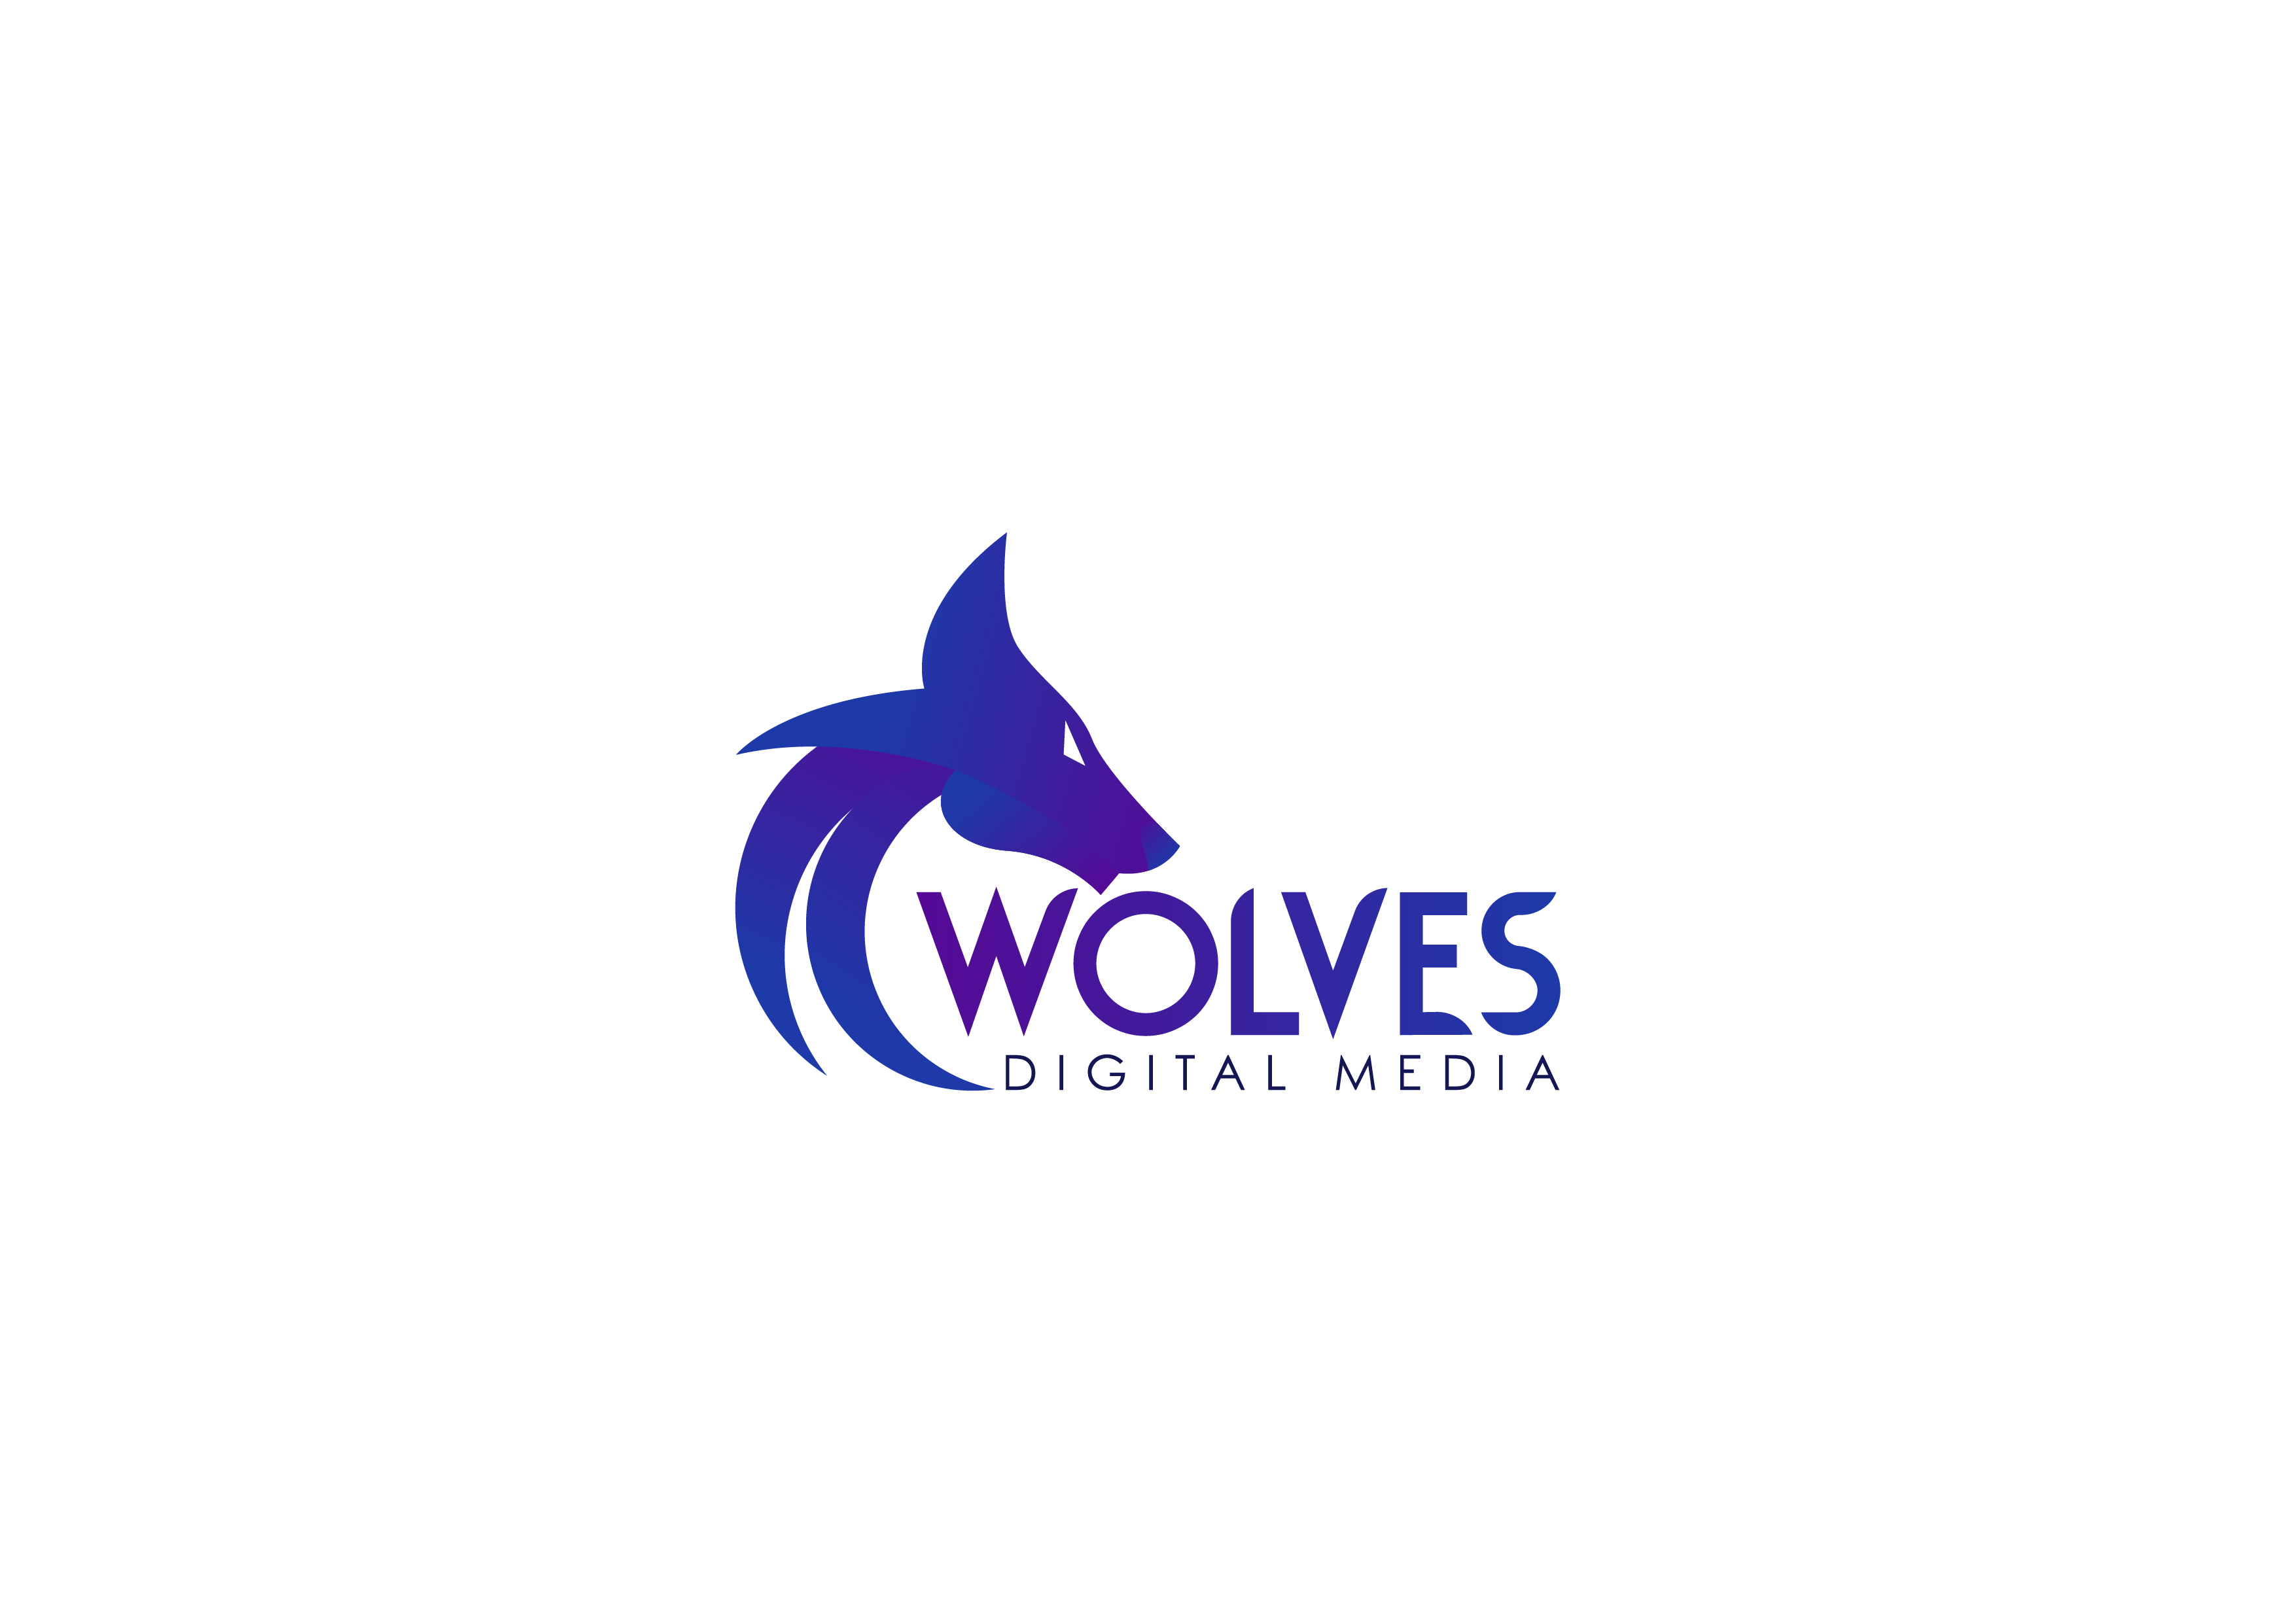 Wolves Digital Media